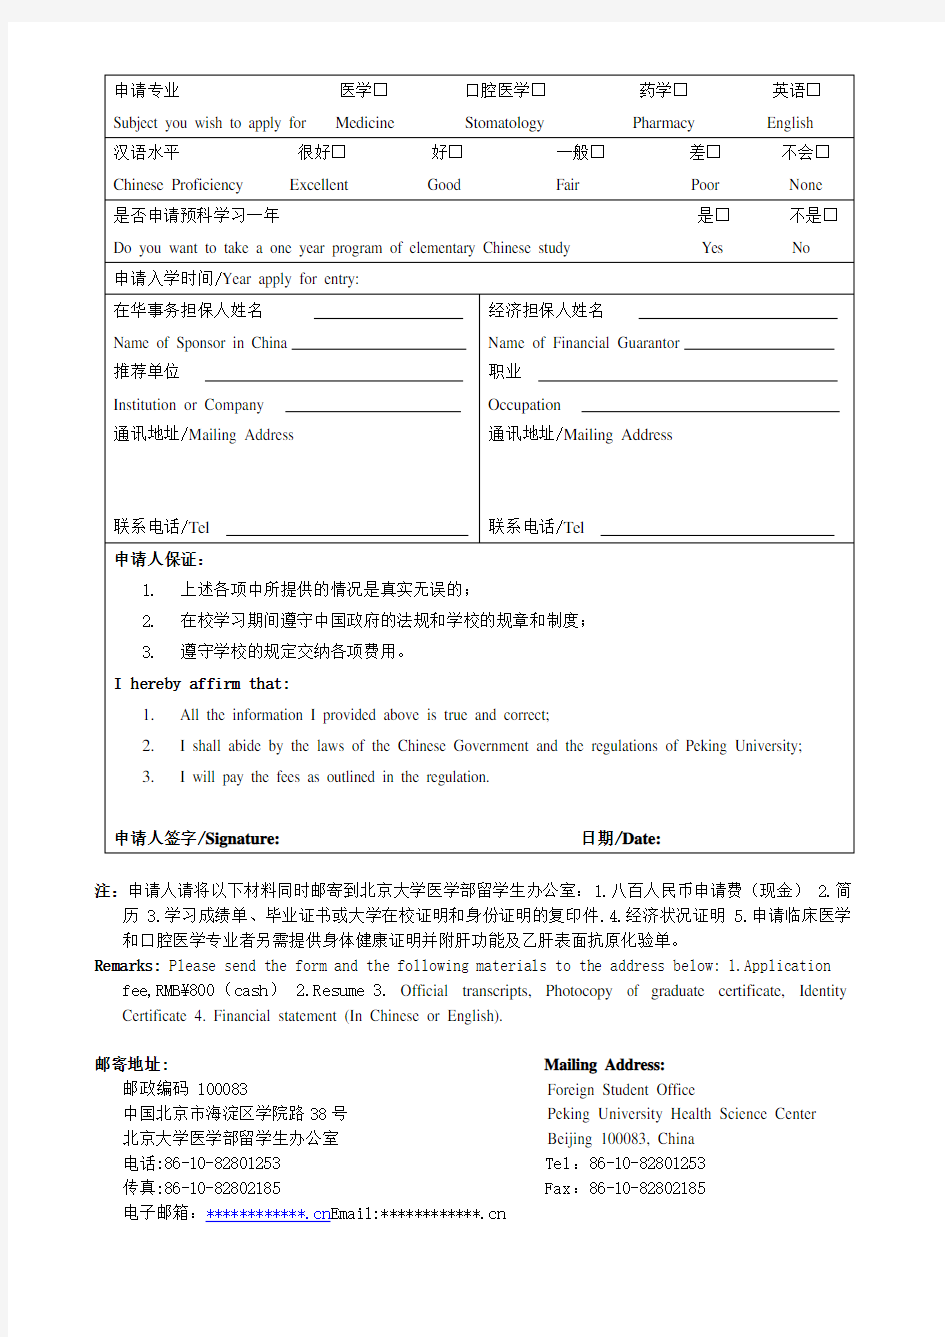 北京大学医学部外国留学生预科生入学申请表